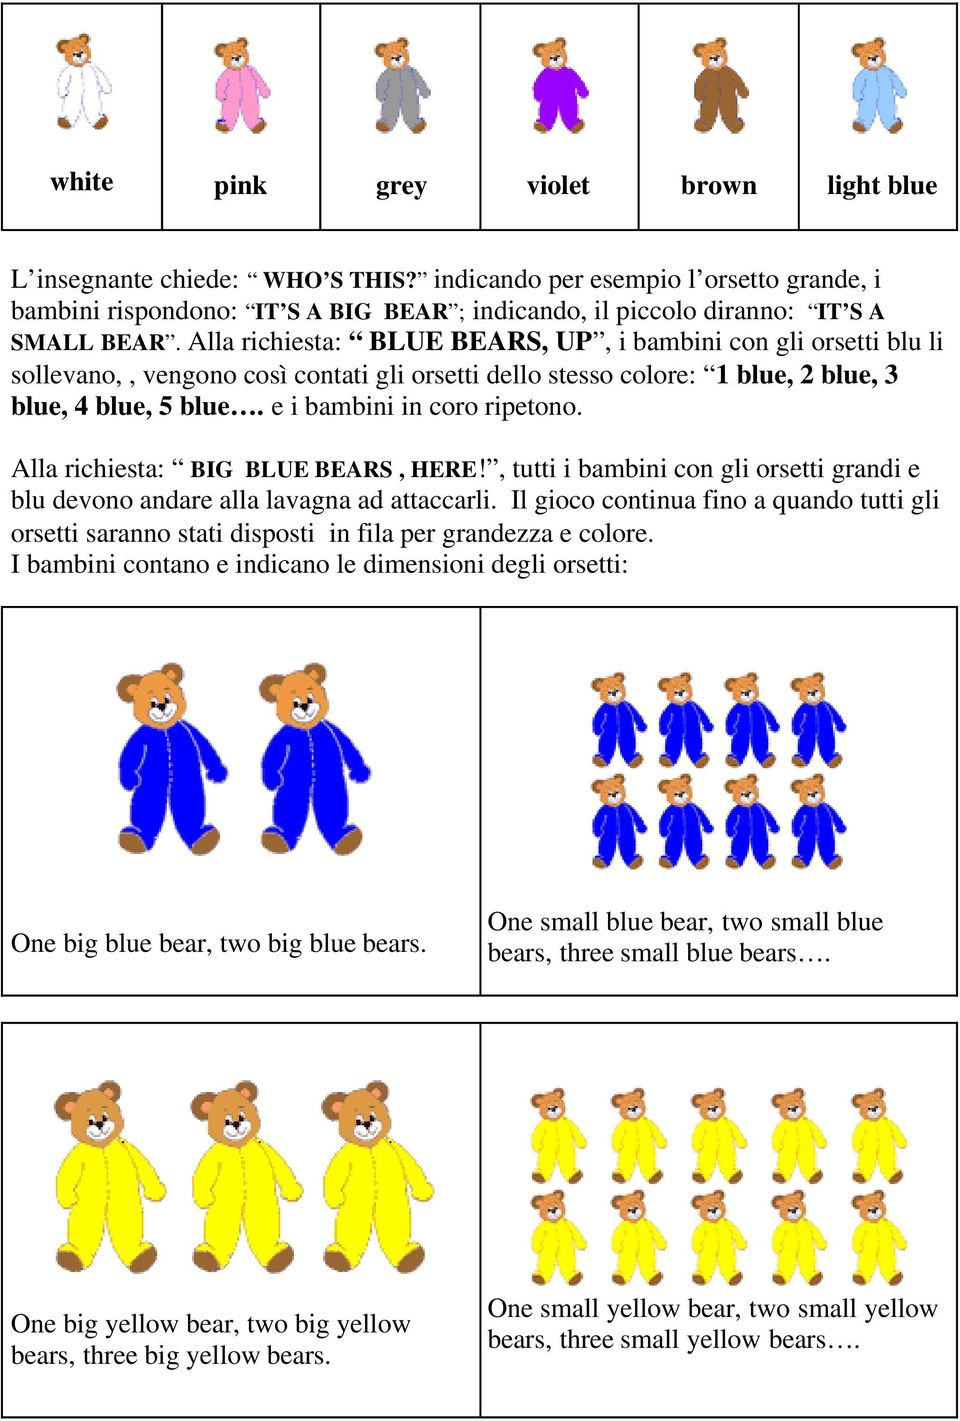 Alla richiesta: BLUE BEARS, UP, i bambini con gli orsetti blu li sollevano,, vengono così contati gli orsetti dello stesso colore: 1 blue, 2 blue, 3 blue, 4 blue, 5 blue. e i bambini in coro ripetono.